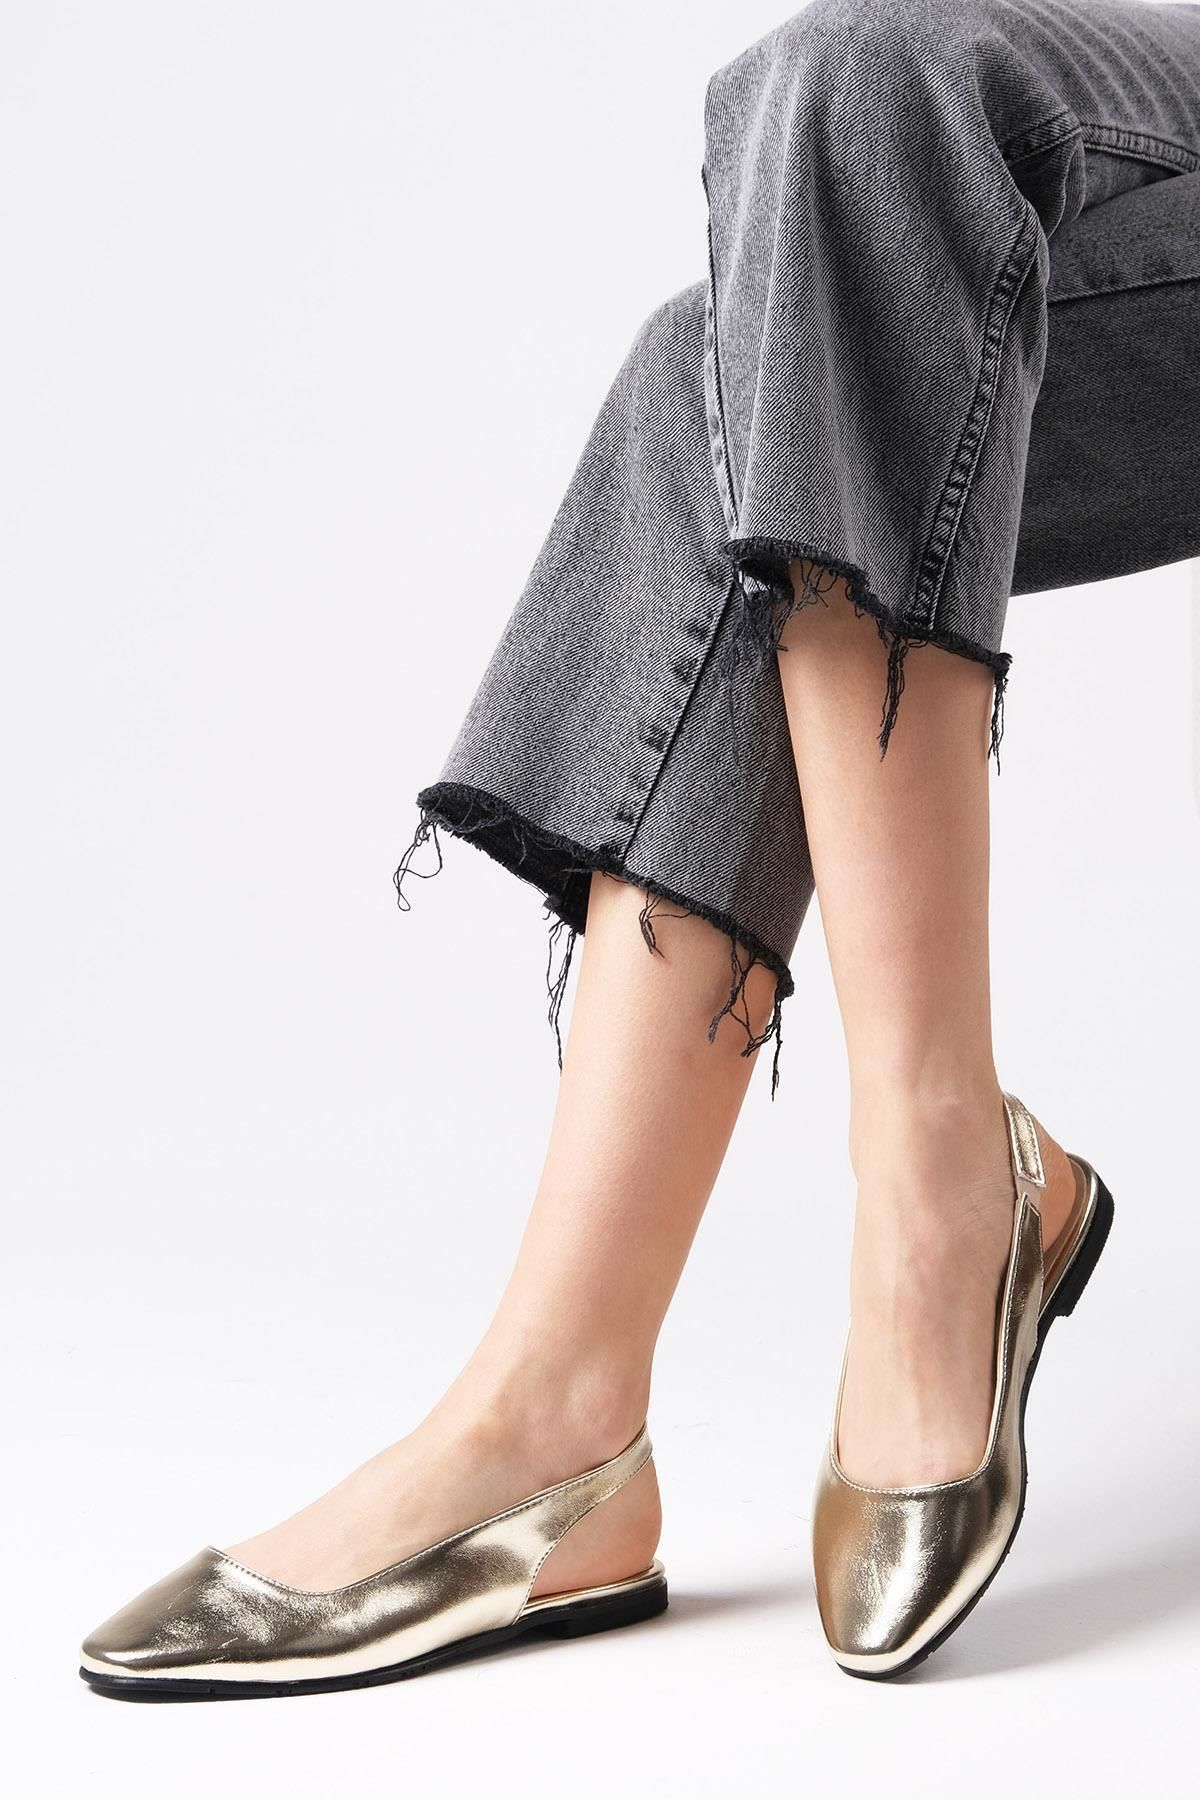 Mio Gusto Metalik Altın Renk Arkası Açık Kadın Düz Babet Ayakkabı